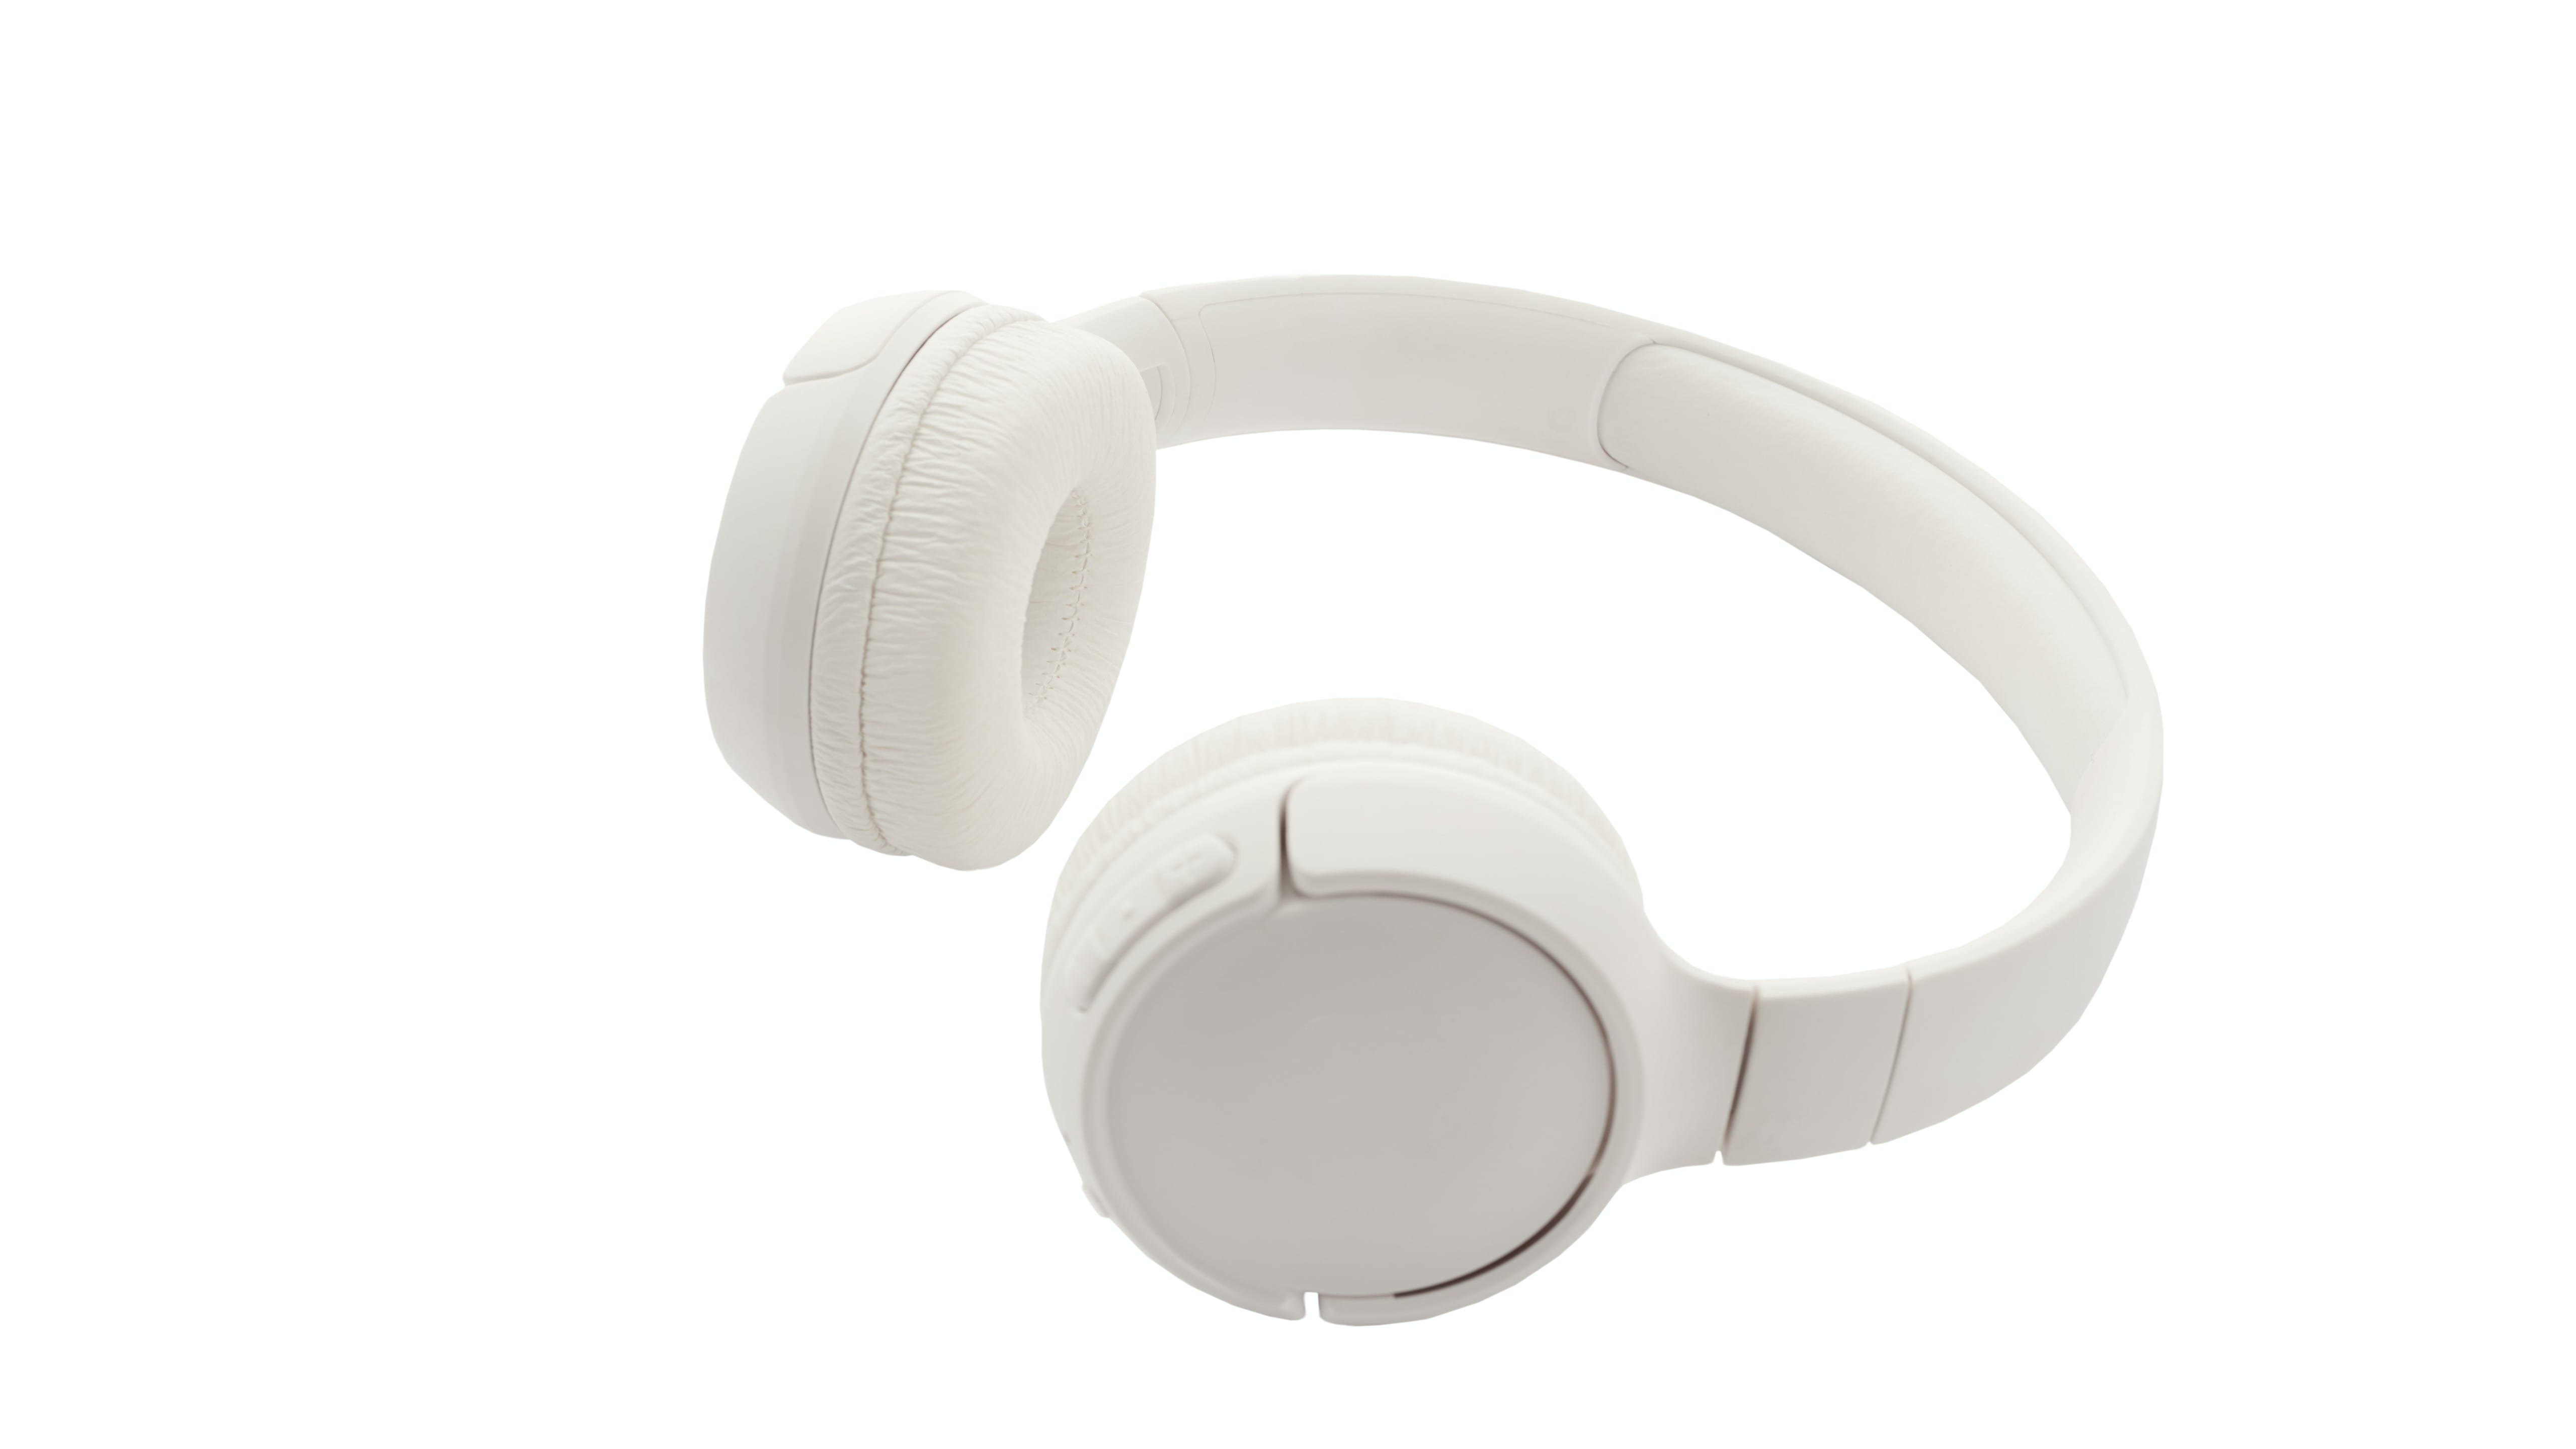 多款式耳机纯色简约背景高清素材创意壁纸